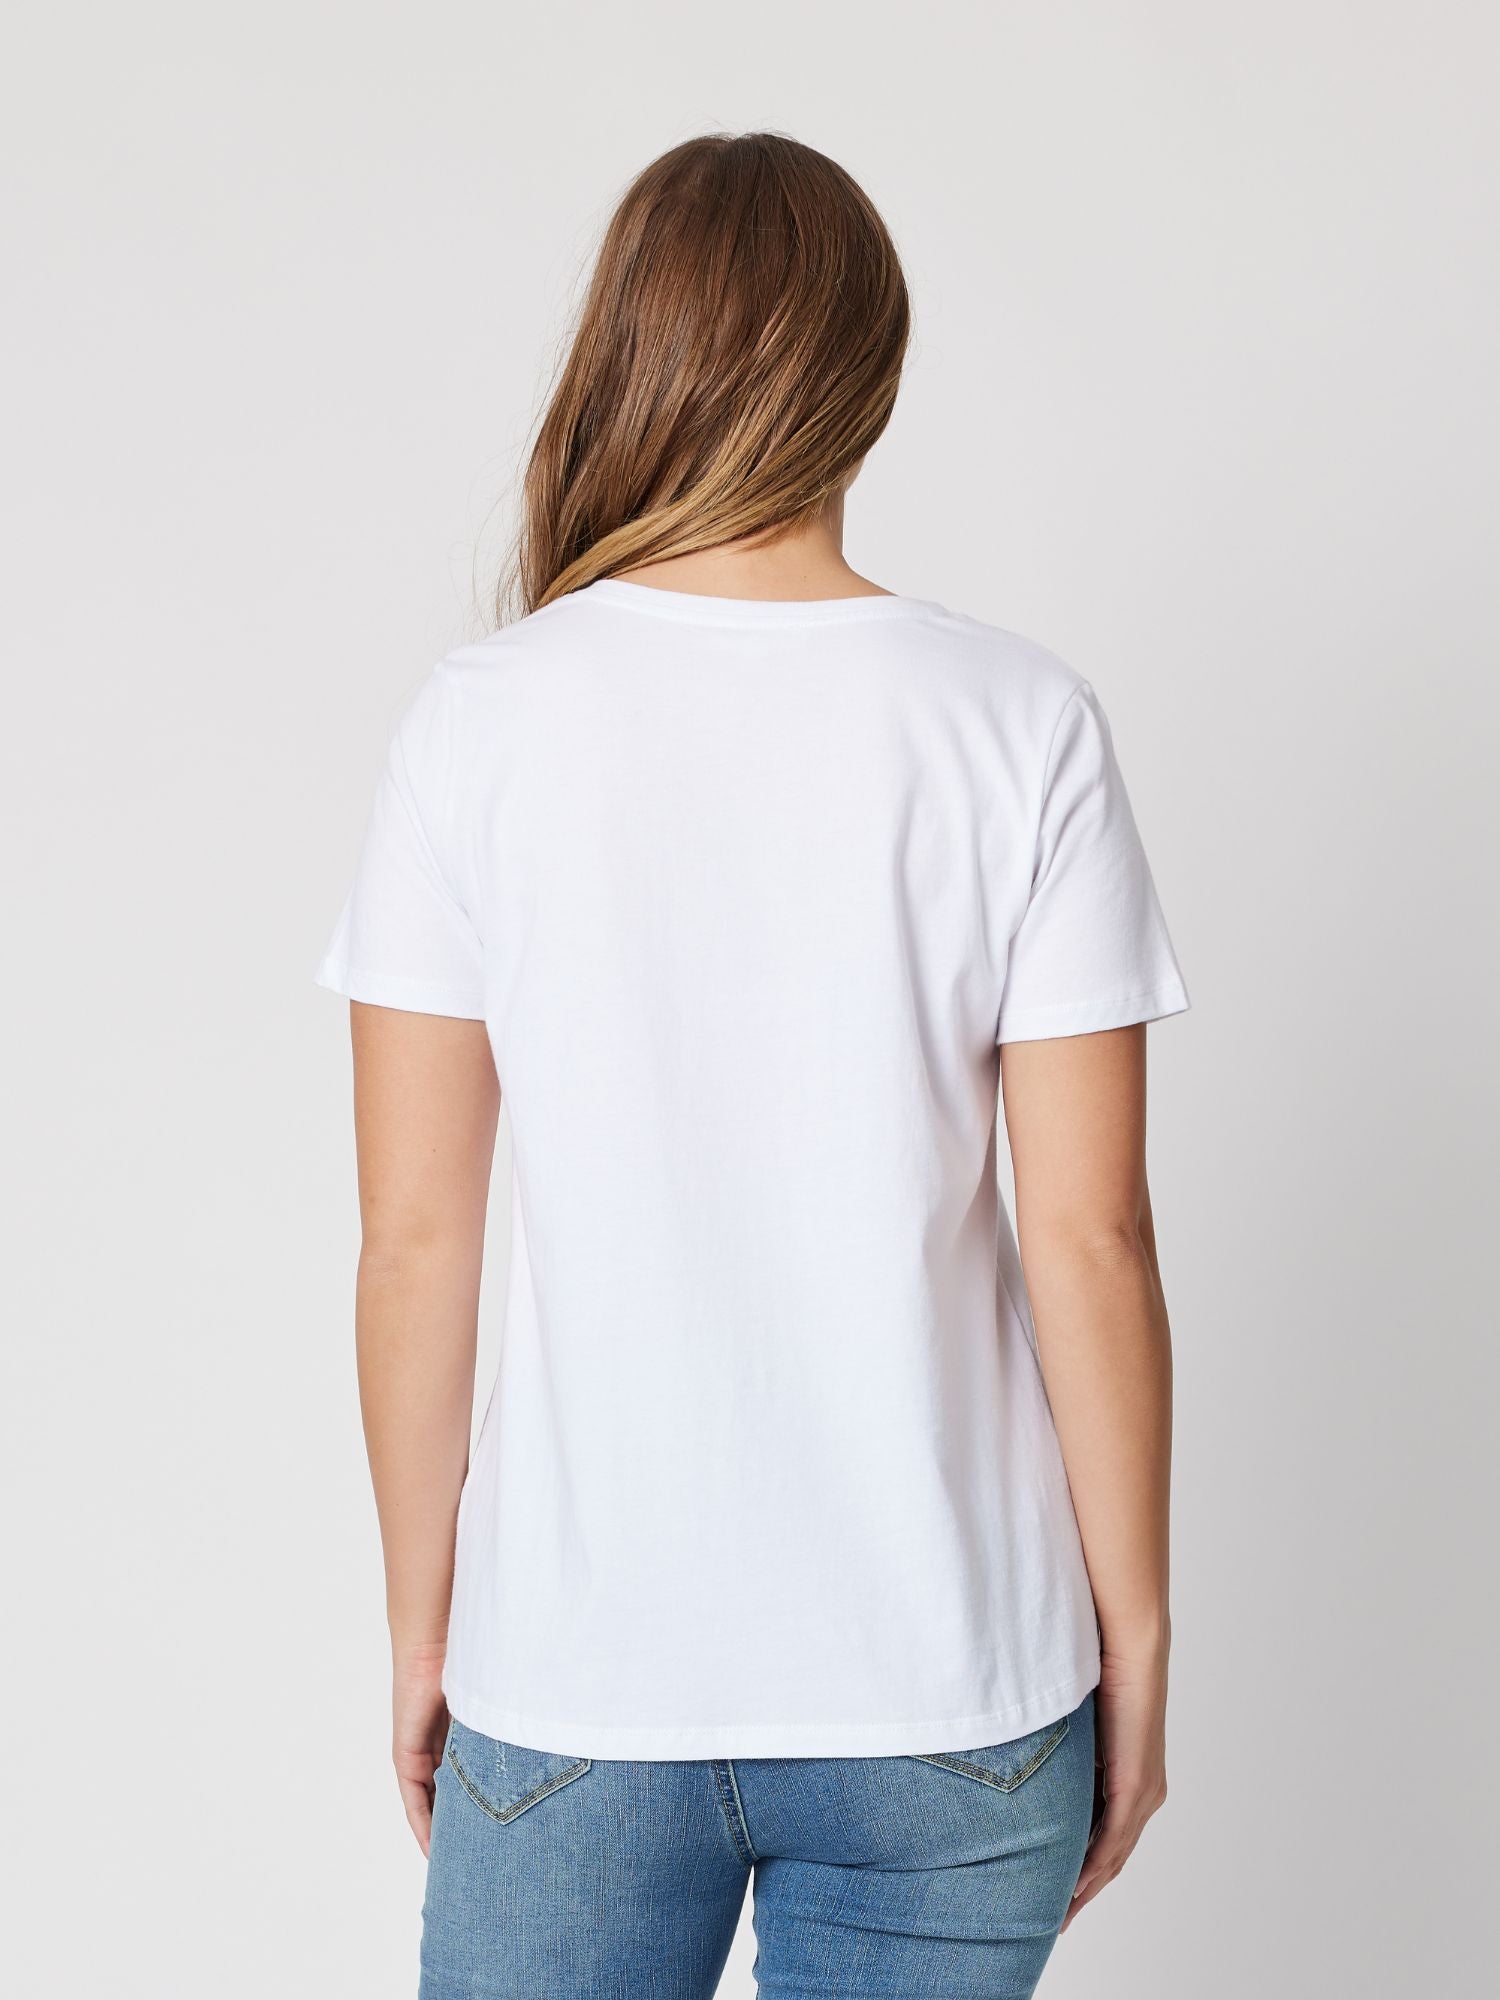 Paris Cotton T-shirt - White